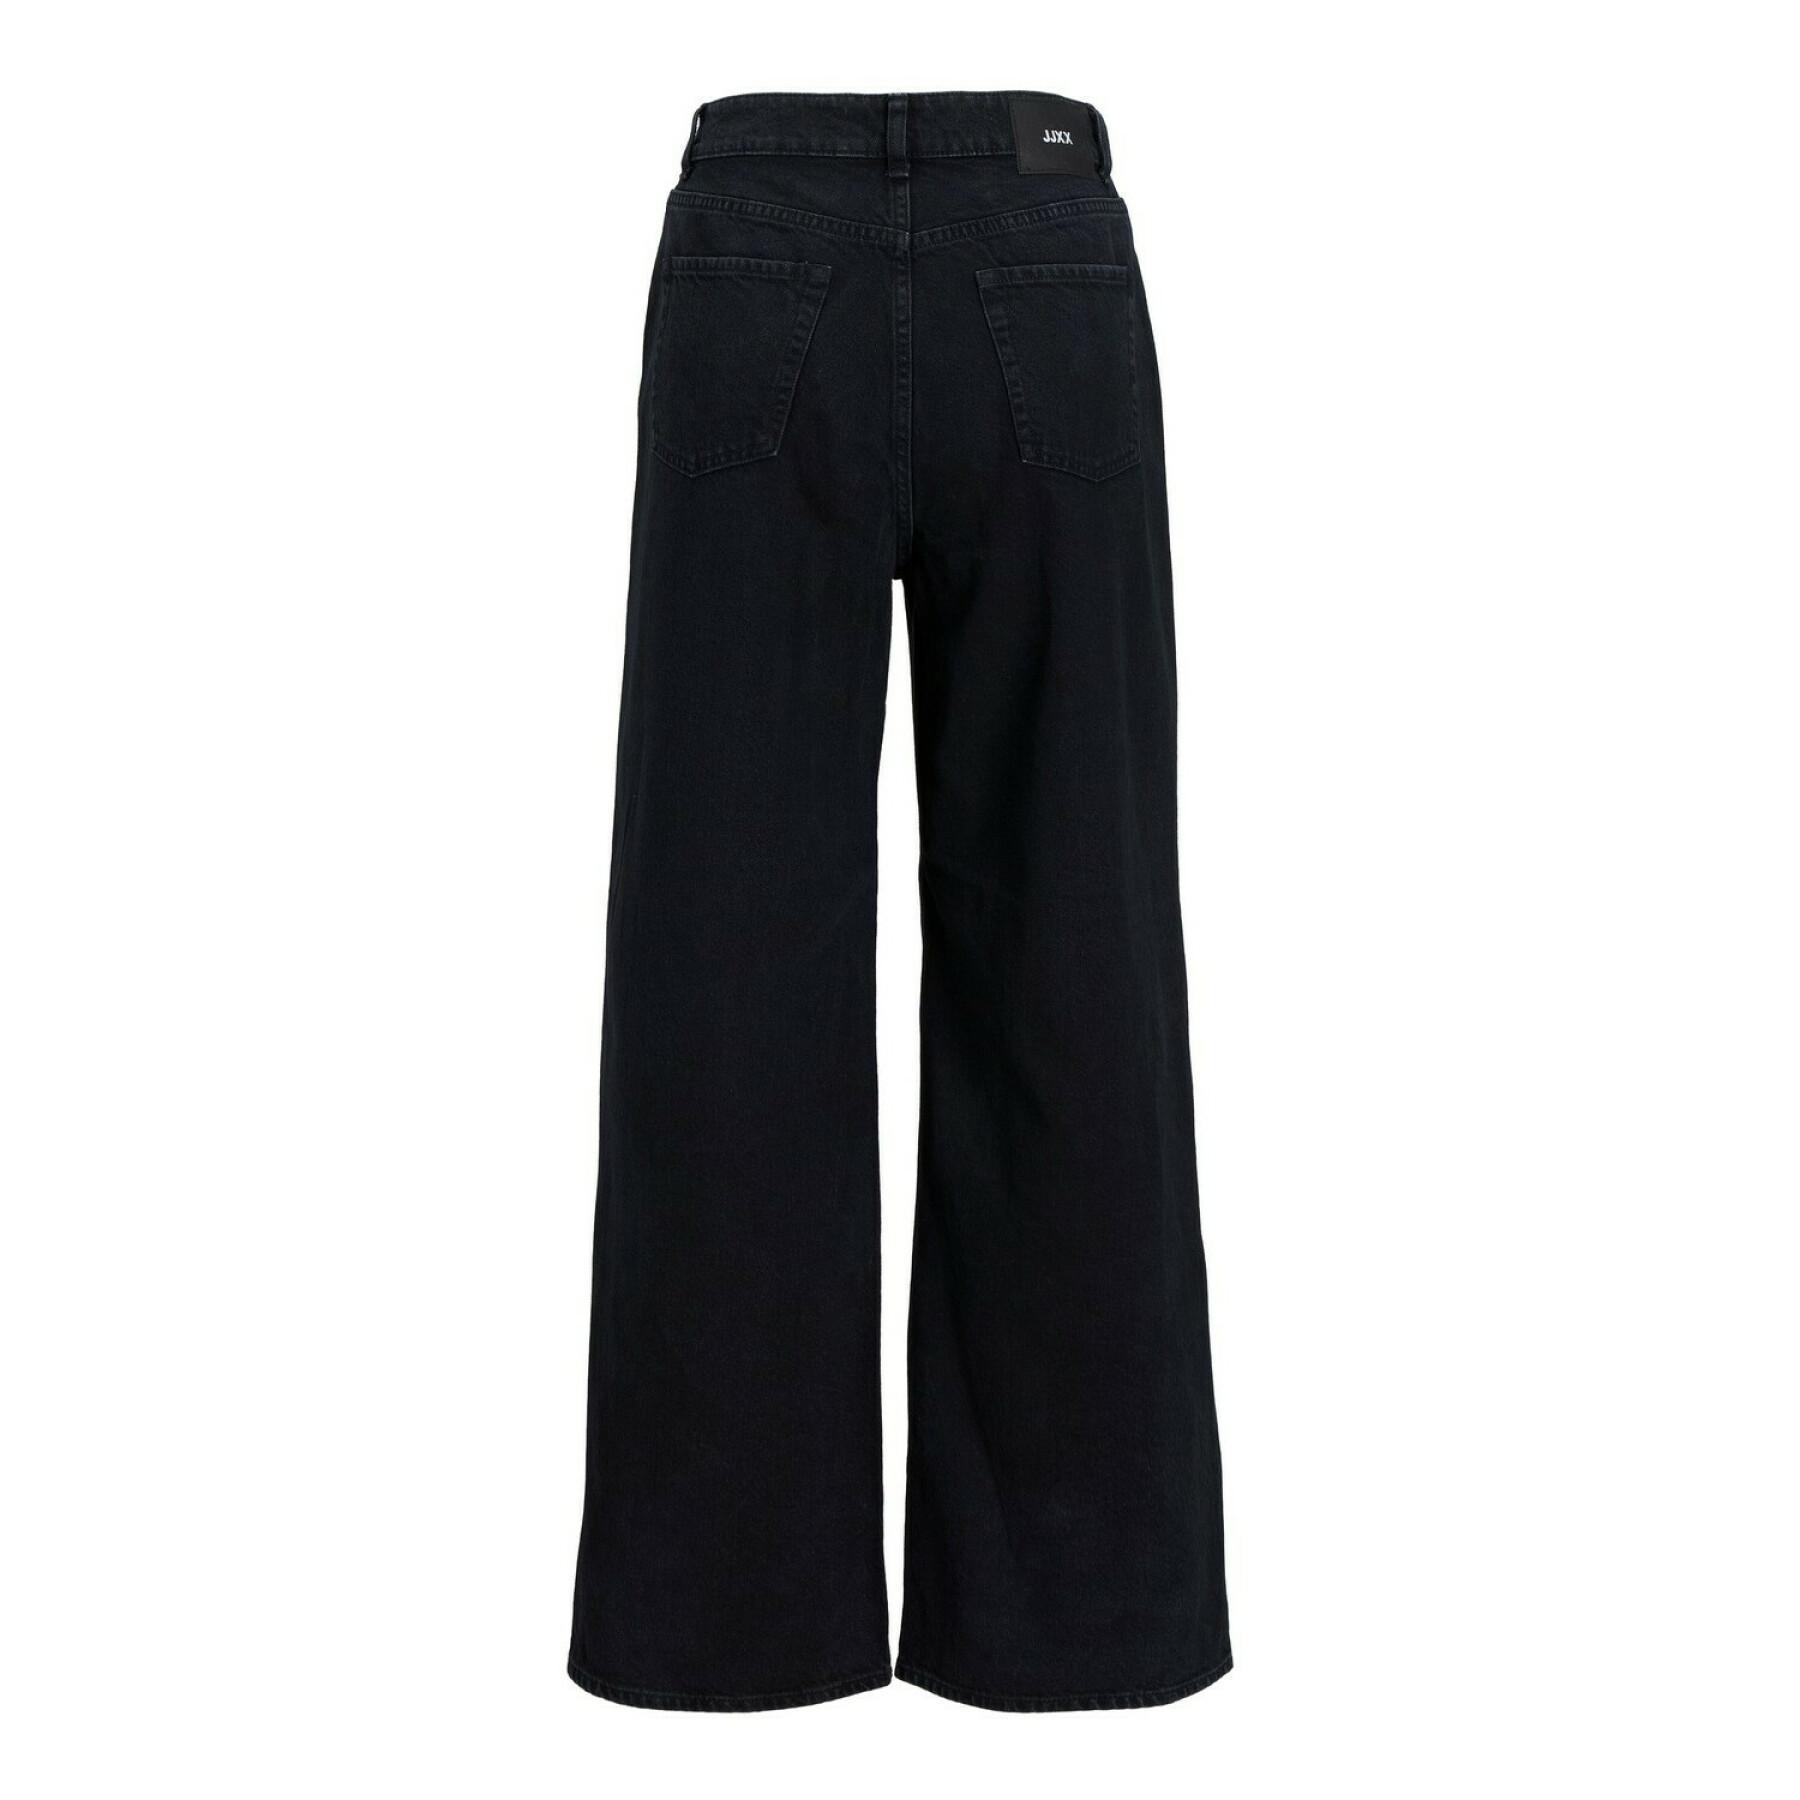 Women's jeans JJXX tokyo wide nr6004